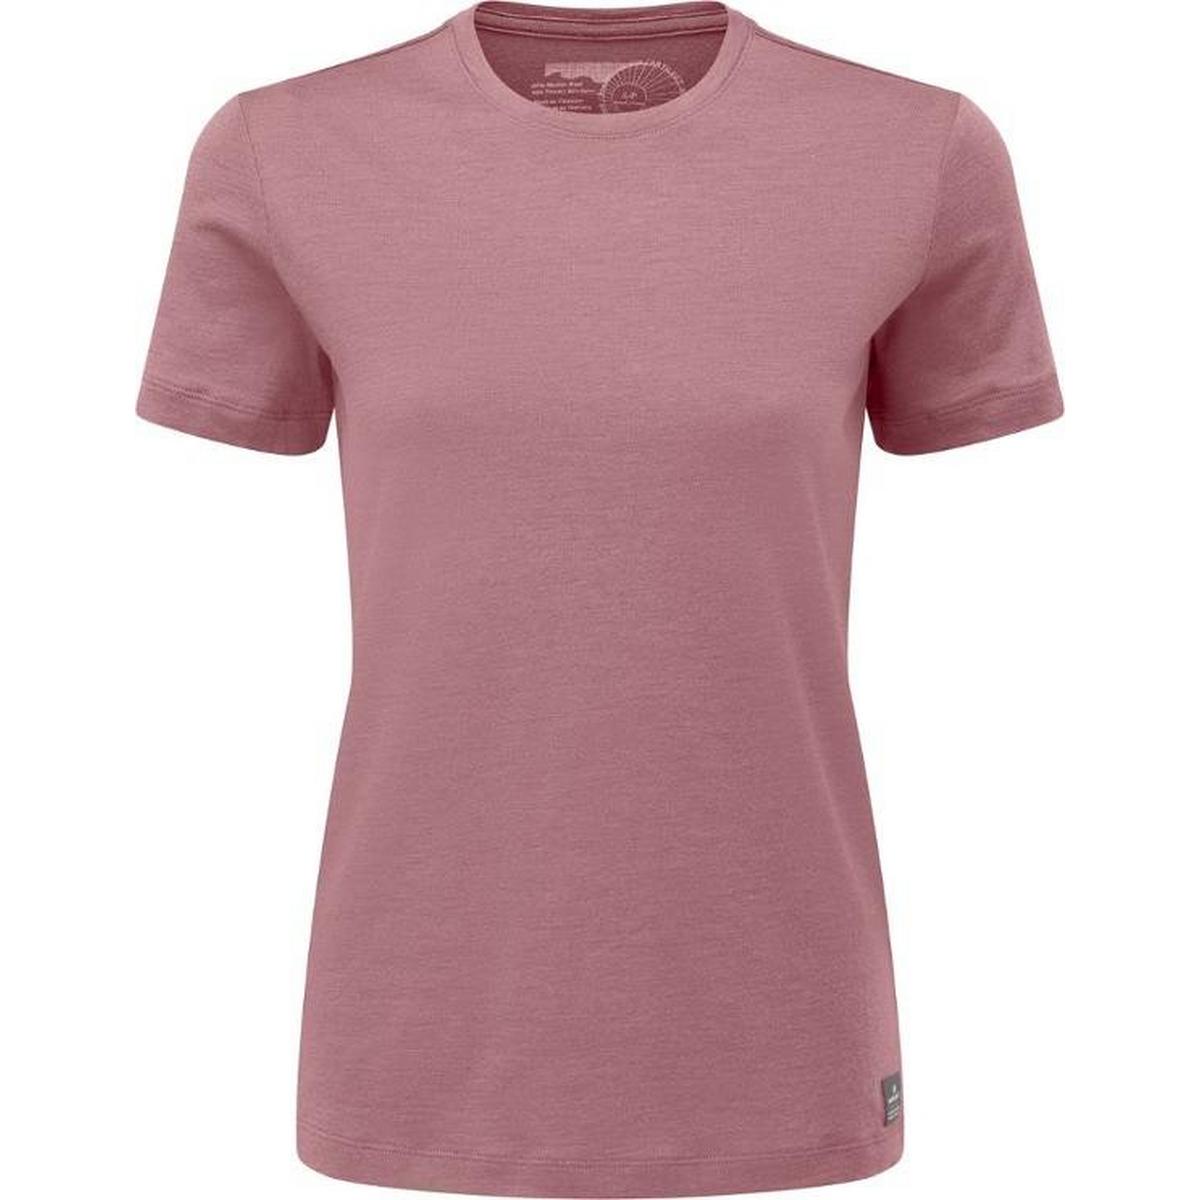 Women's Artilect Utilitee Short Sleeve T-Shirt | Technical Tops ...